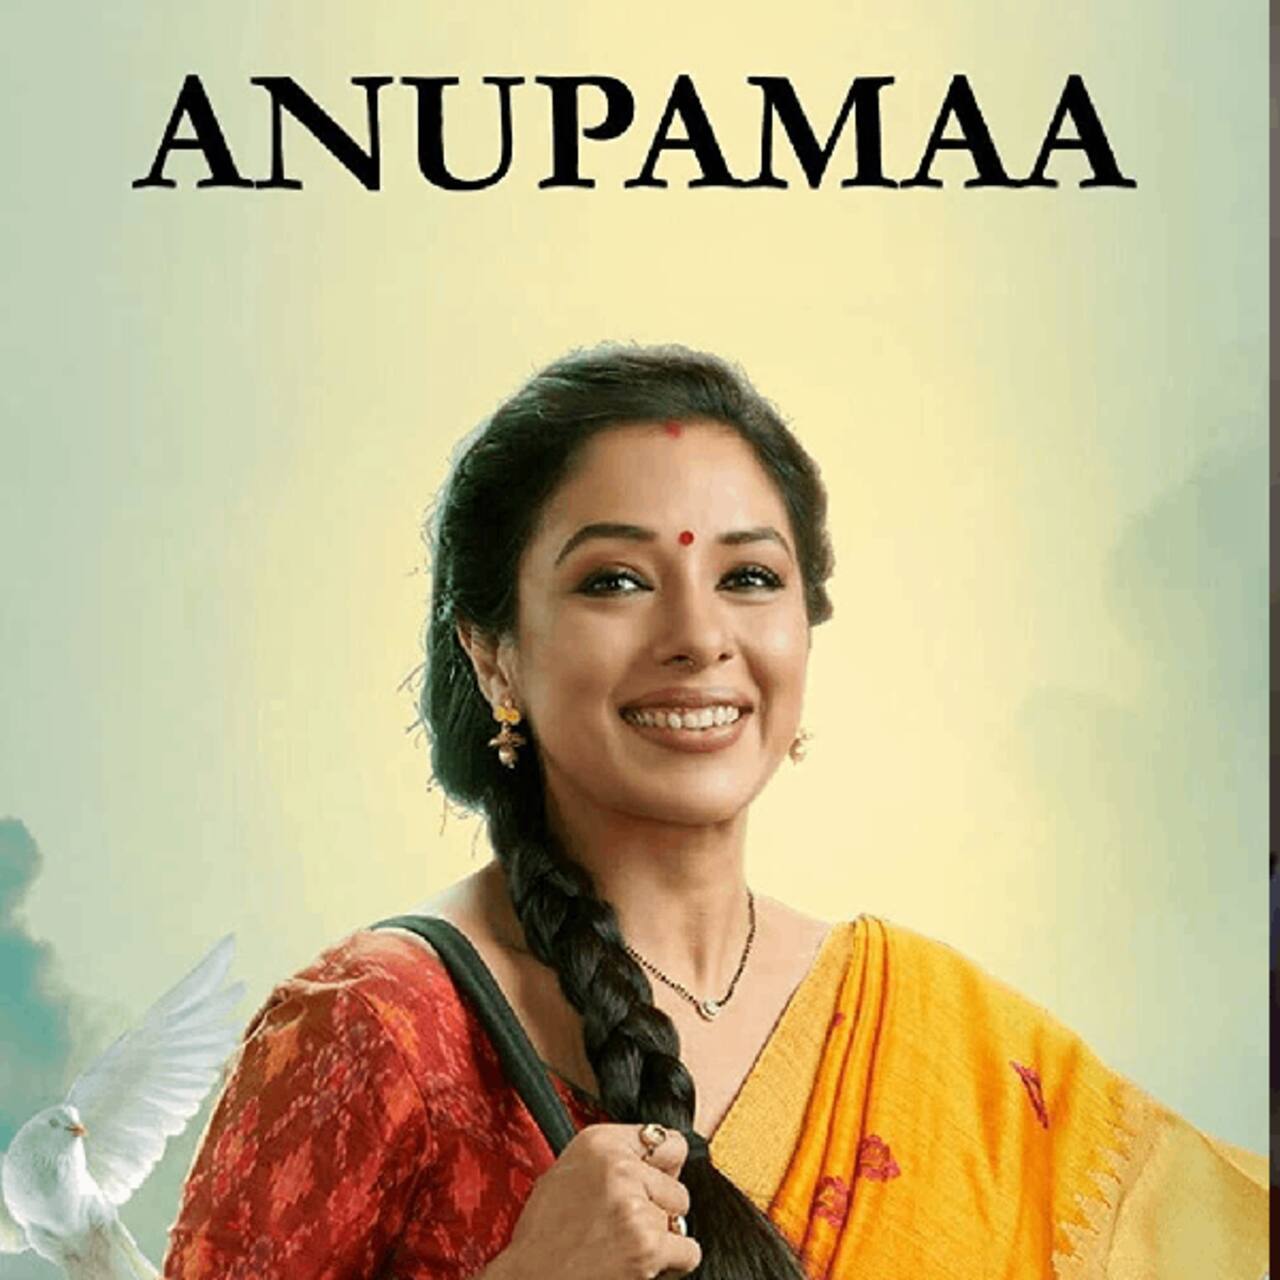 Anupamaa tops TRP charts